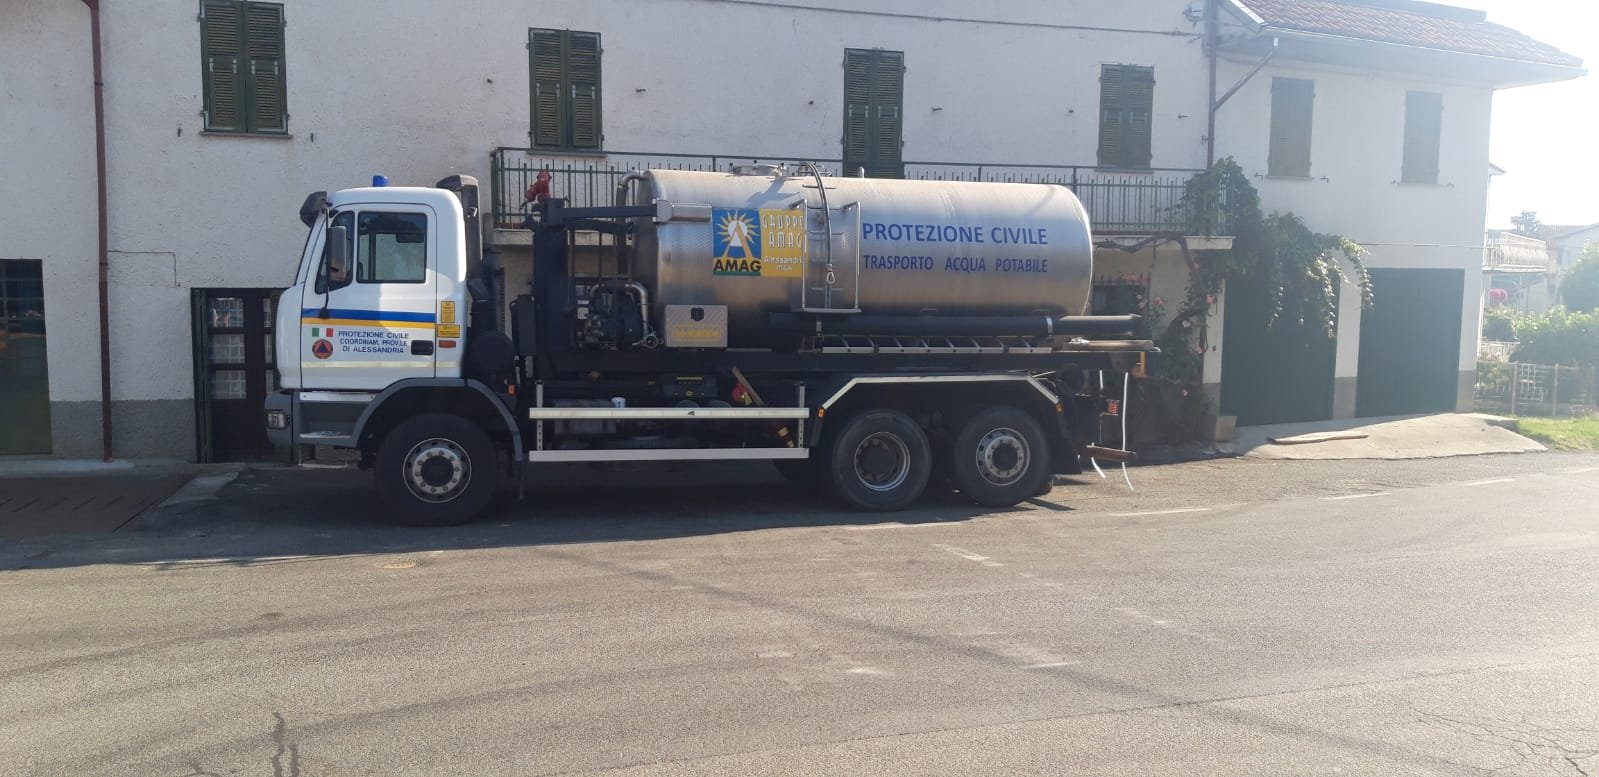 Problemi idrici a Cassinelle: arriva l’autobotte della Protezione Civile